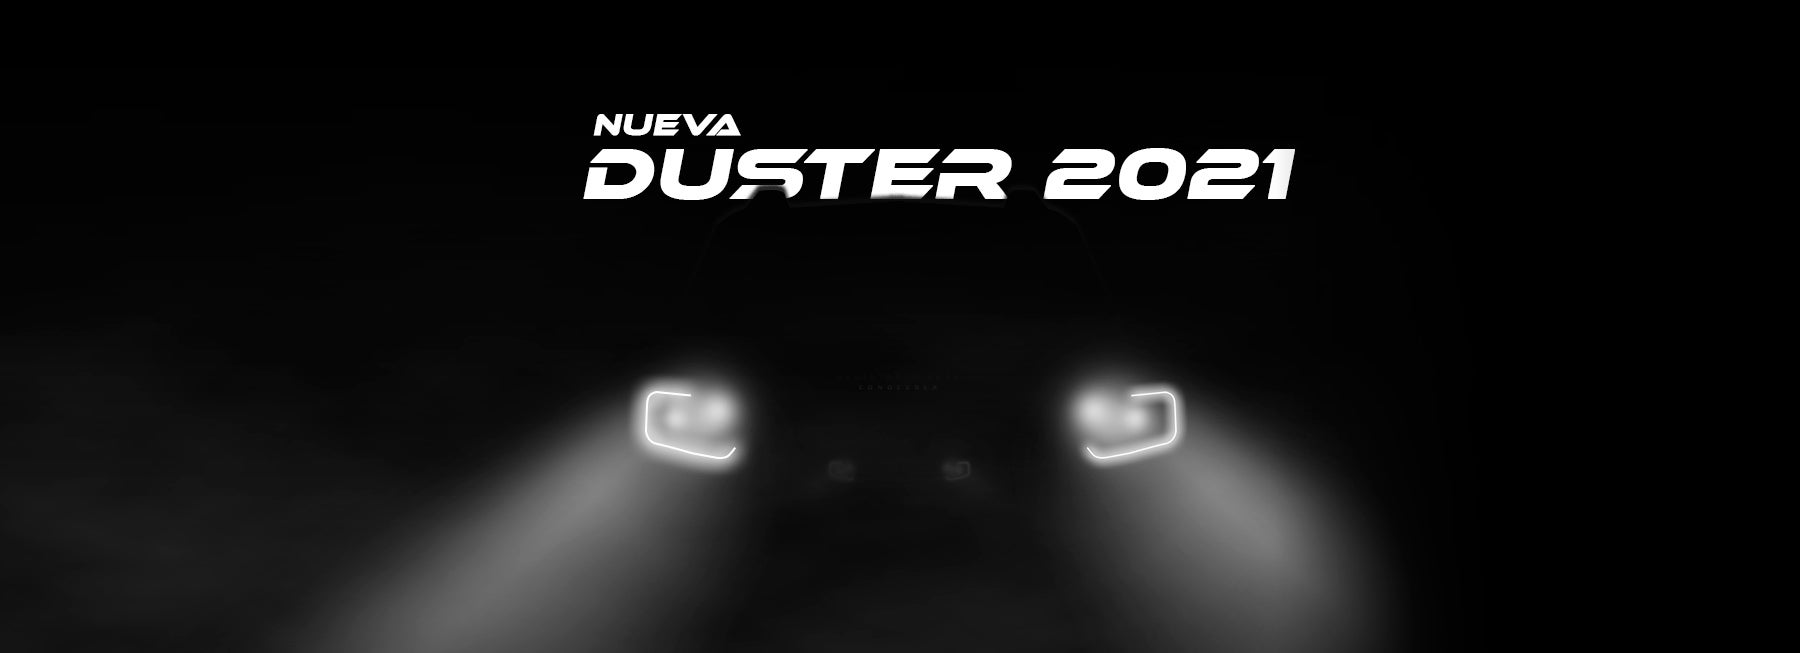 Nueva Duster 2021